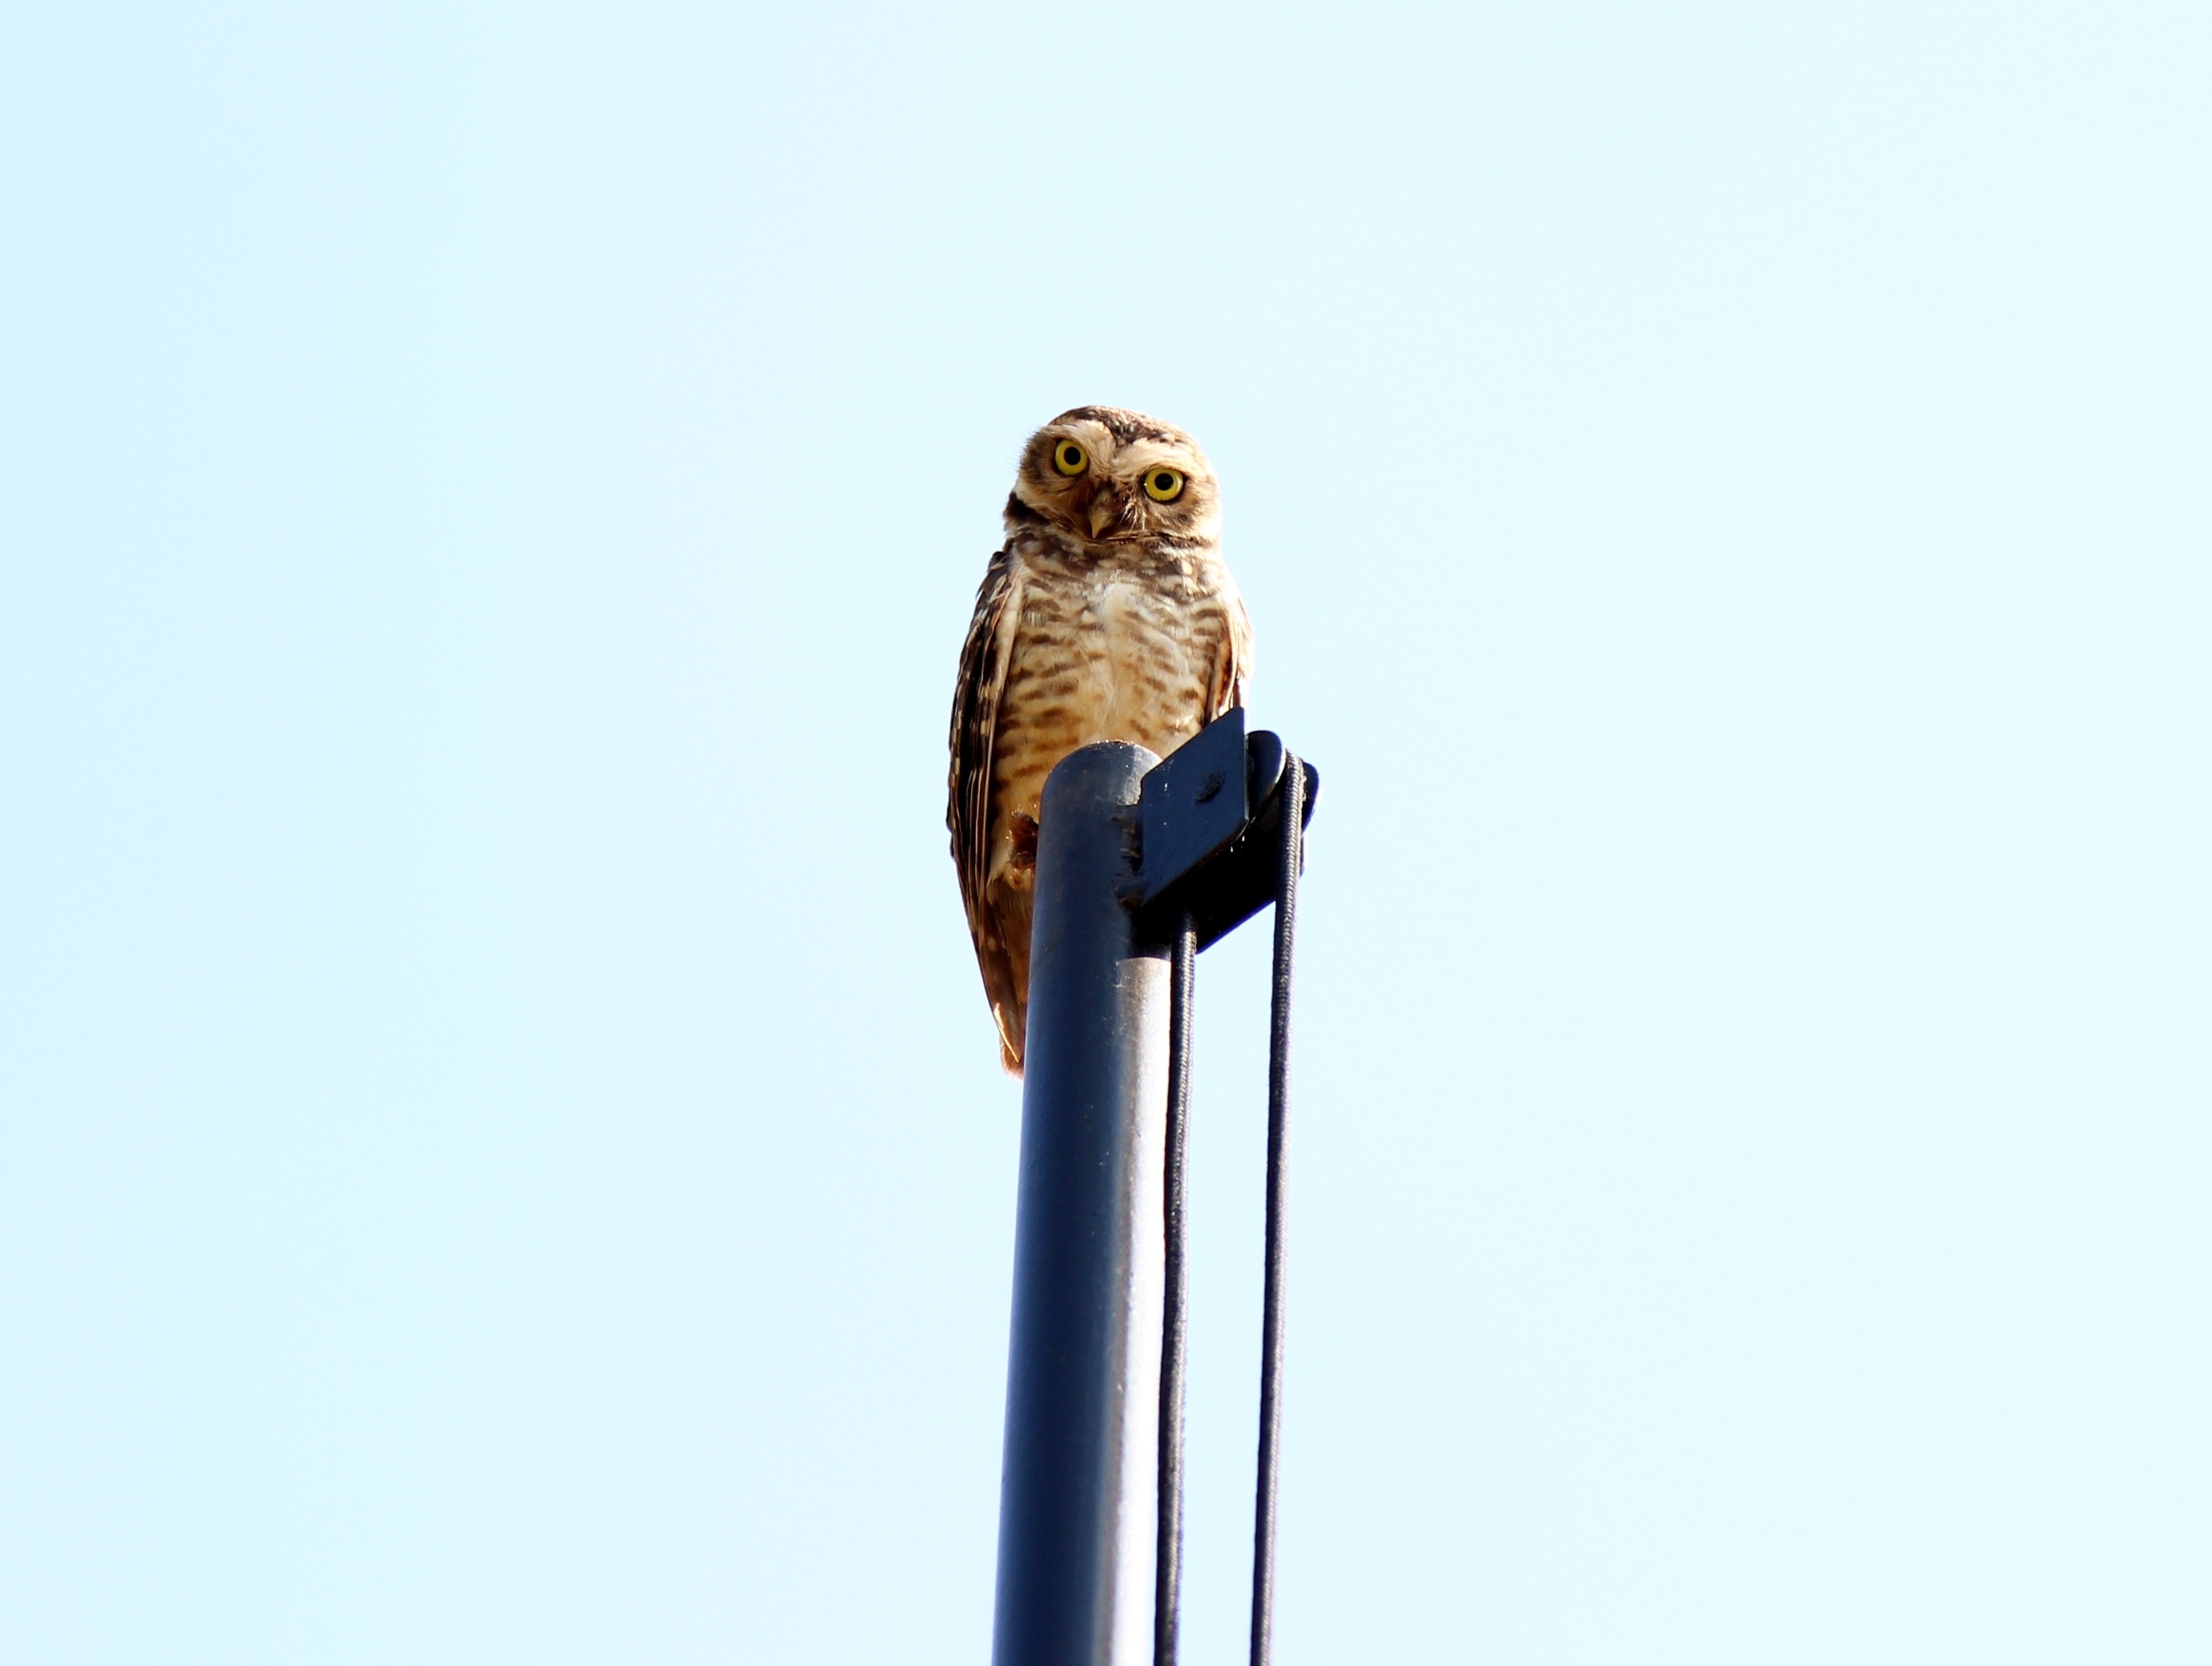 brown owl on blue metal post